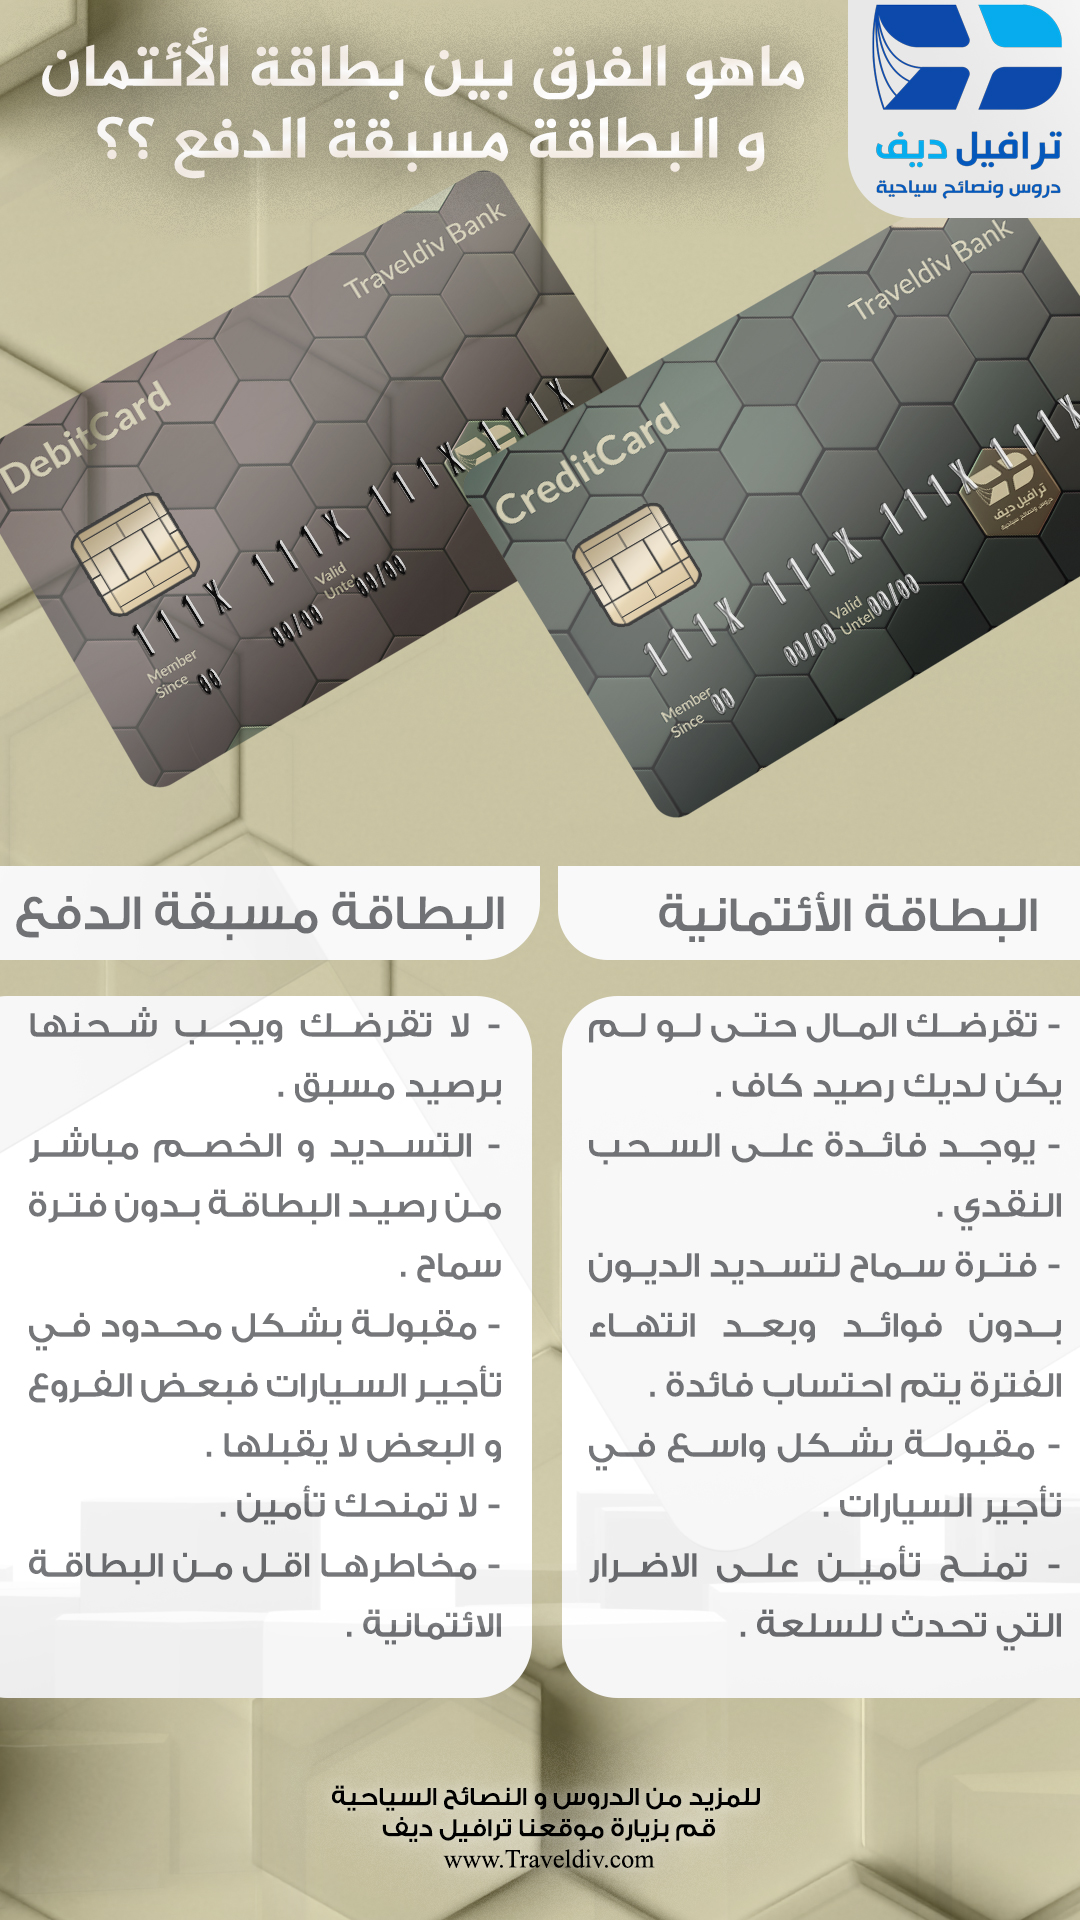 الفرق بين البطاقة الائتمانية و البطاقة المسبقة الدفع